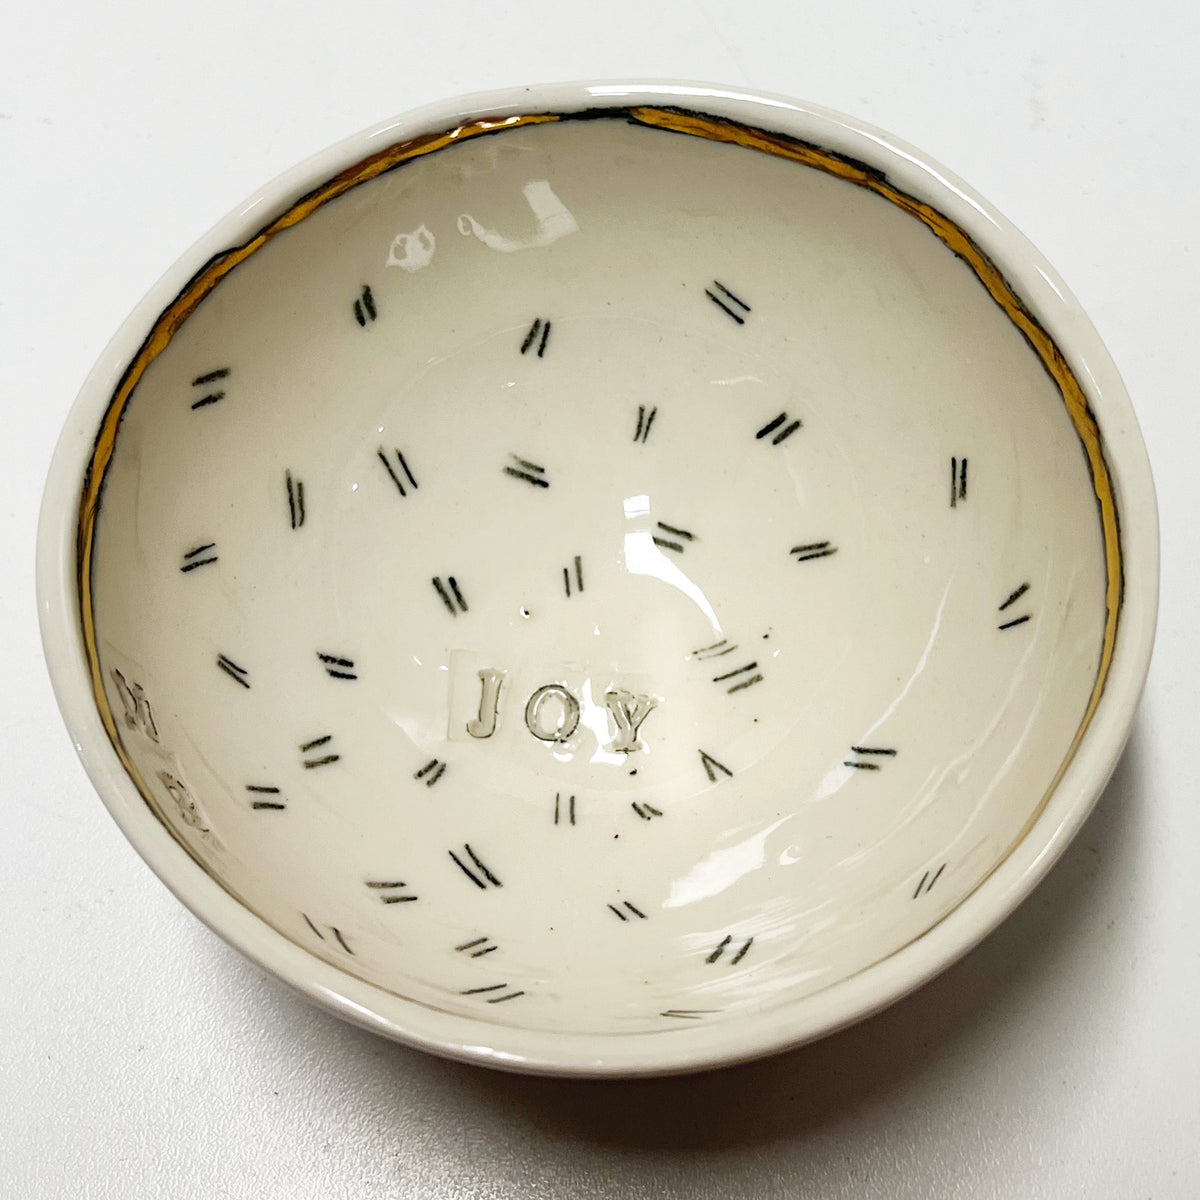 Marla Buck - Joy Small Bowl, 4" x 4" x 2"